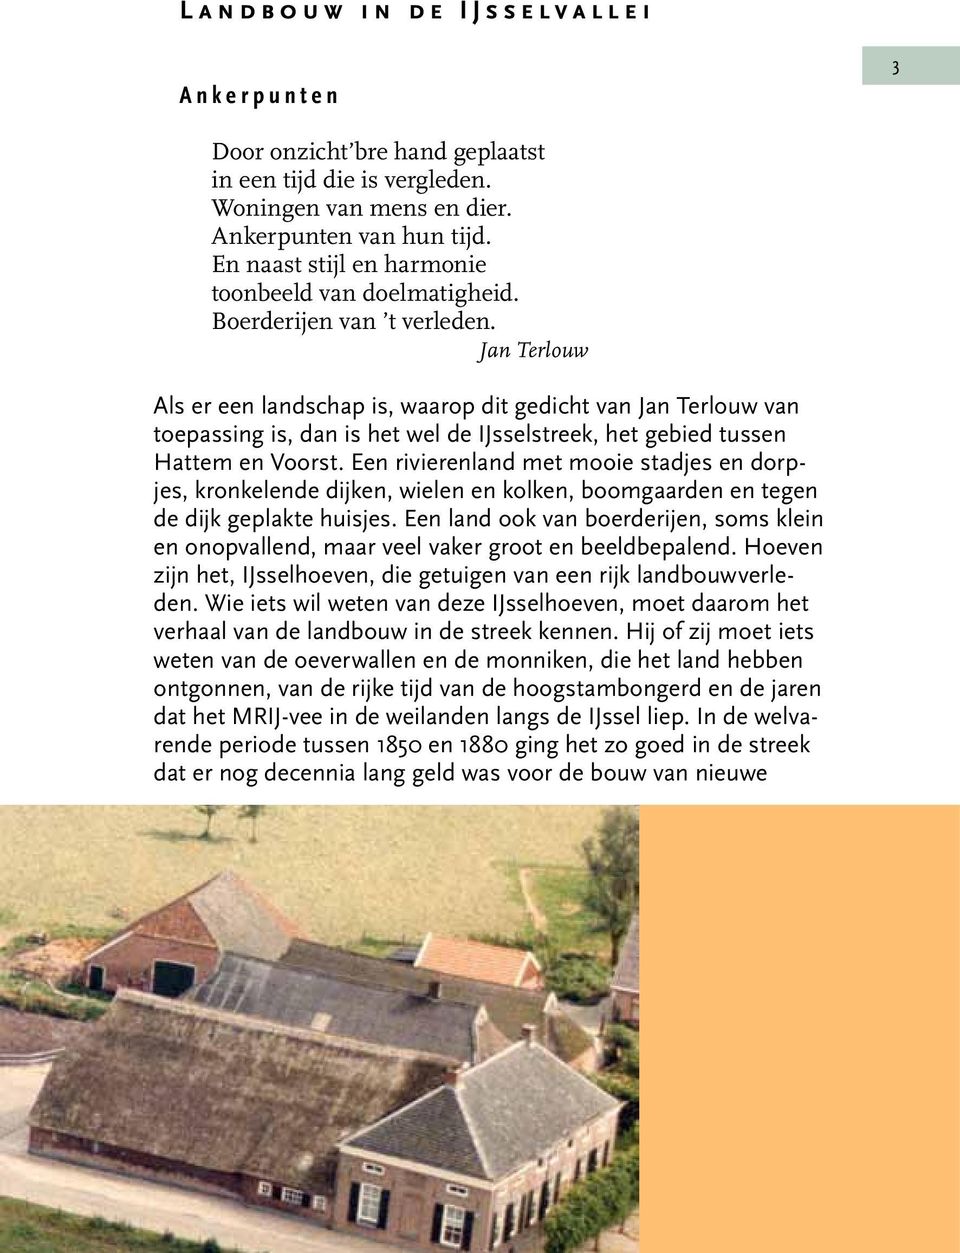 Jan Terlouw Als er een landschap is, waarop dit gedicht van Jan Terlouw van toepassing is, dan is het wel de IJsselstreek, het gebied tussen Hattem en Voorst.